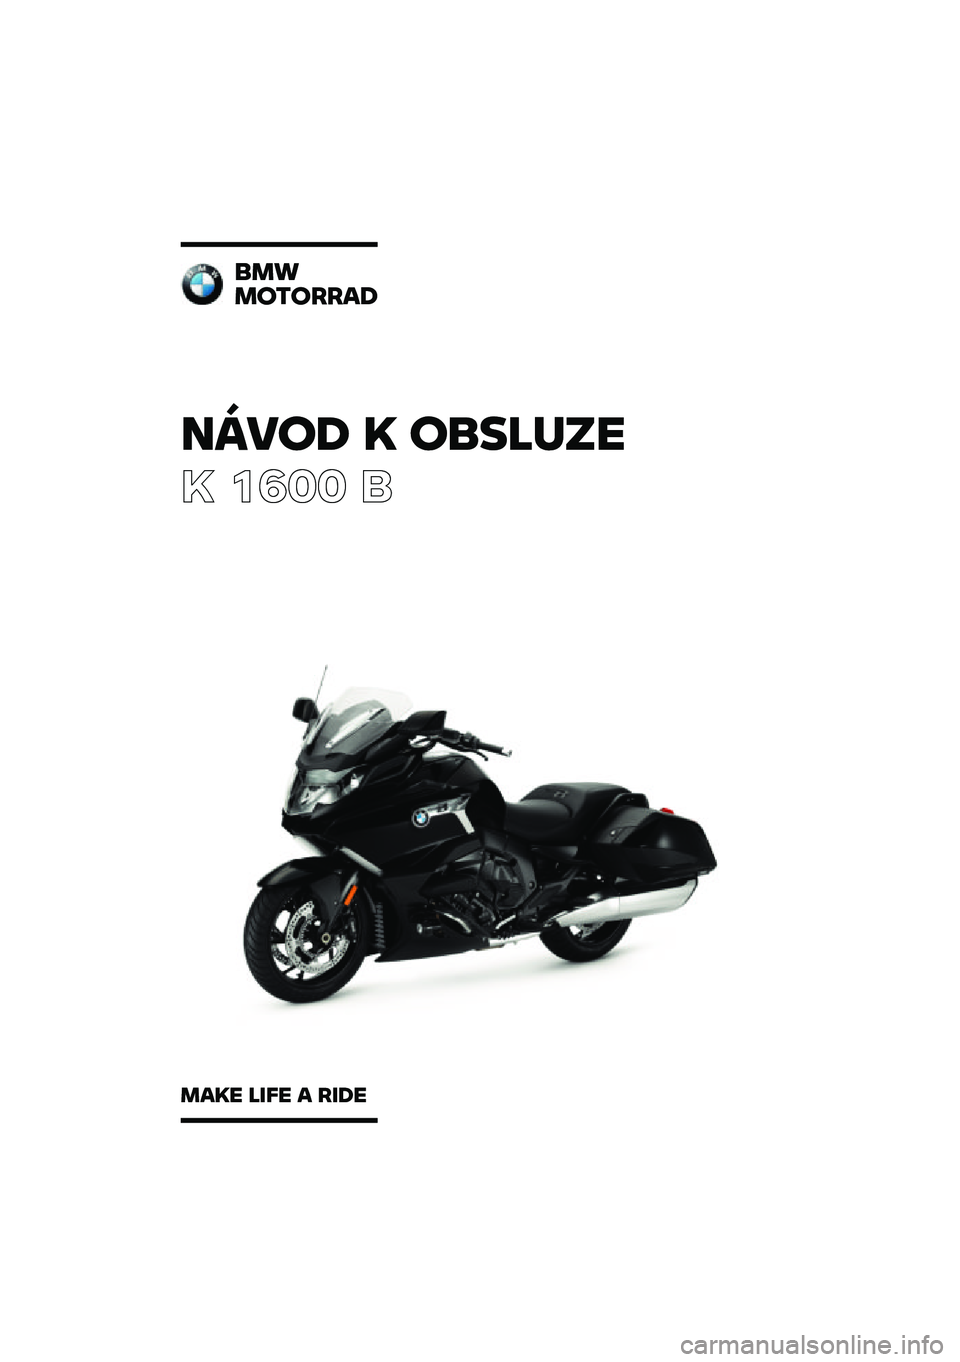 BMW MOTORRAD K 1600 B 2020  Návod k obsluze (in Czech) �����\b �	 ��
��\f�
��
� ���� �	
�
��
��������\b
���	� �\f��� � ���\b� 